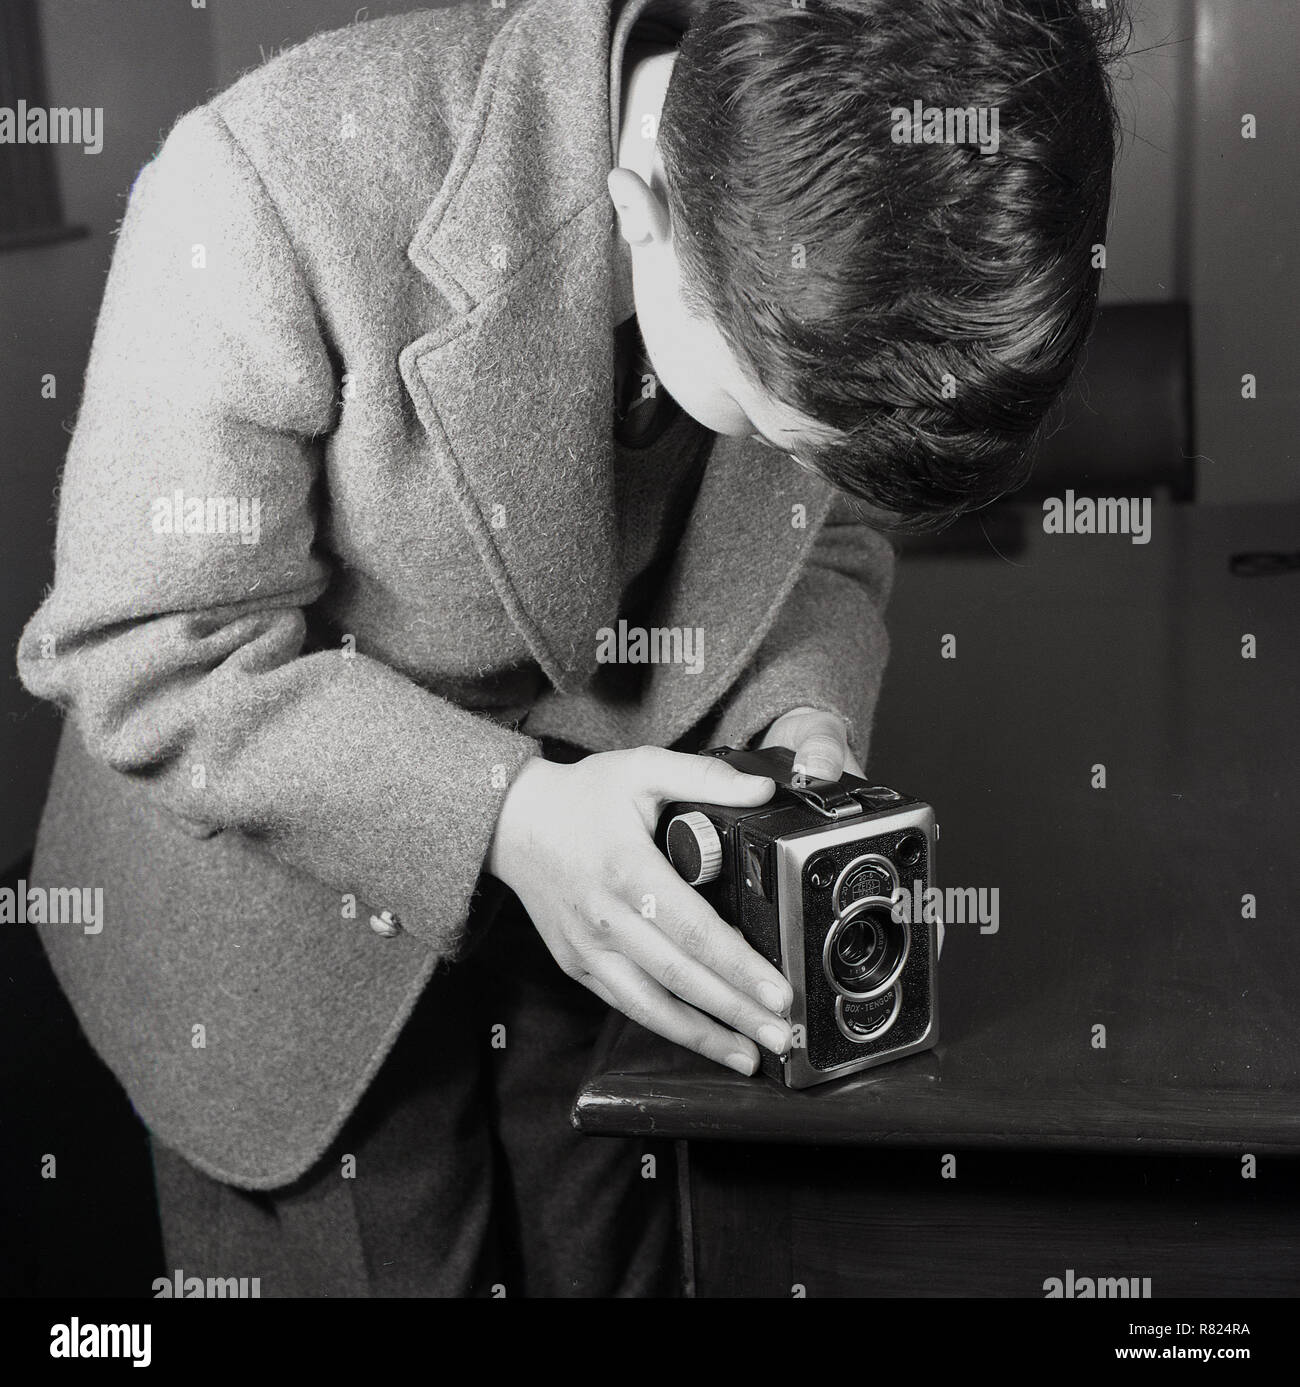 1950, historische Fotografie.. ein schuljunge trägt eine Wolljacke mit der Ecke eines hölzernen Tisch als Unterstützung für seine box Tengor Mittelformat film Kamera von Zeiss Ikon in den frühen 50er Jahren gemacht, der Typ 56/2 war ein gut gebauter und relativ fortgeschrittenen, Kamera, als "König der "Kameras". Stockfoto